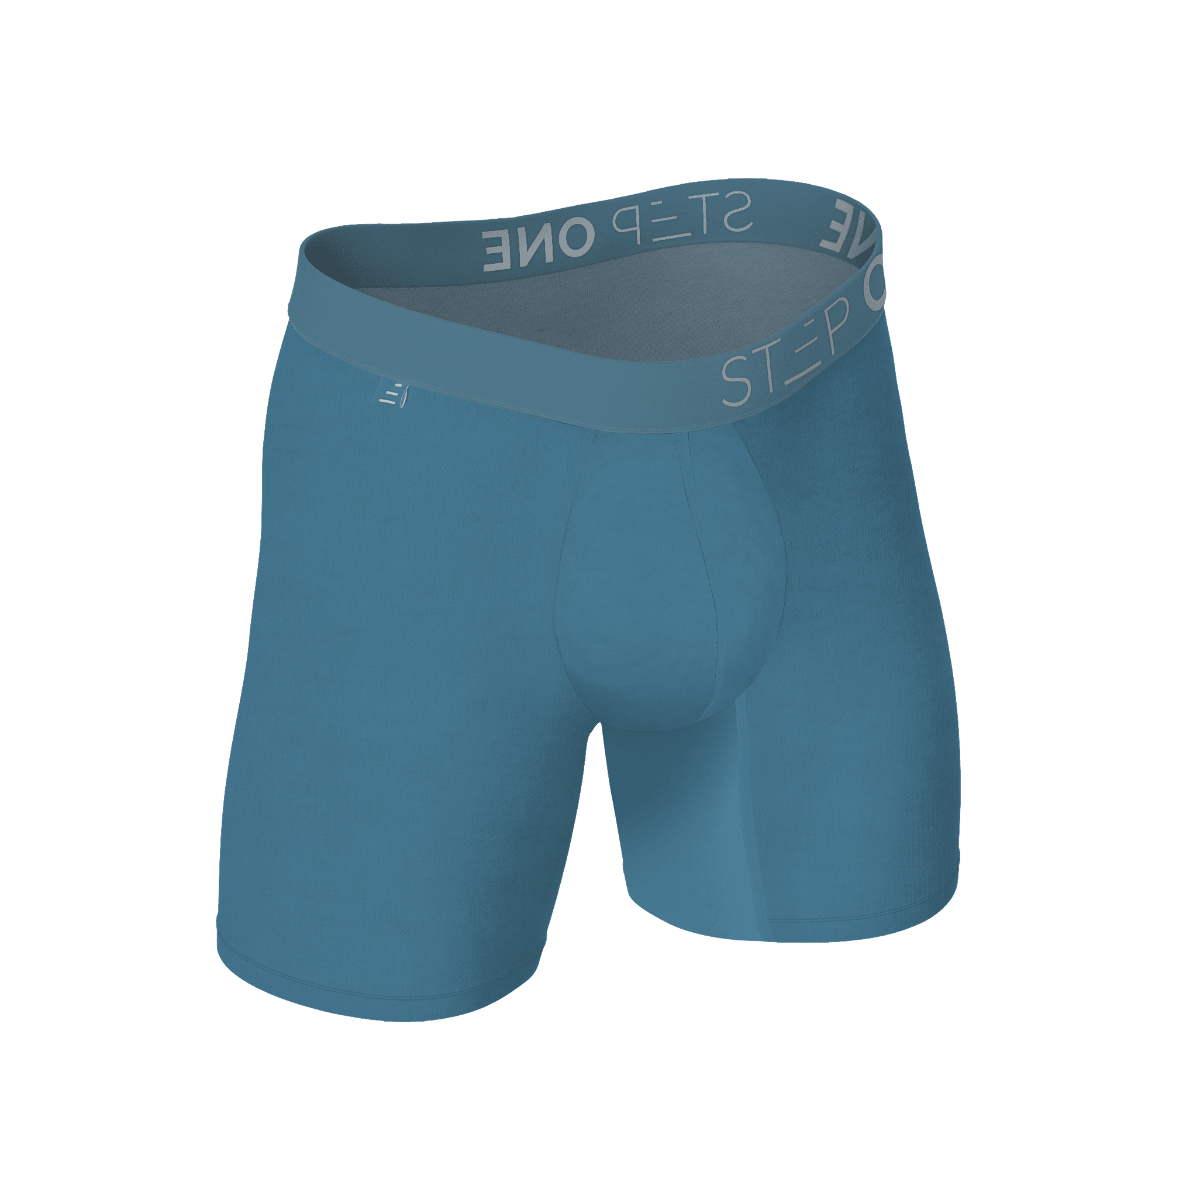 Boxer Brief - Blowfish  Step One Men's Underwear US